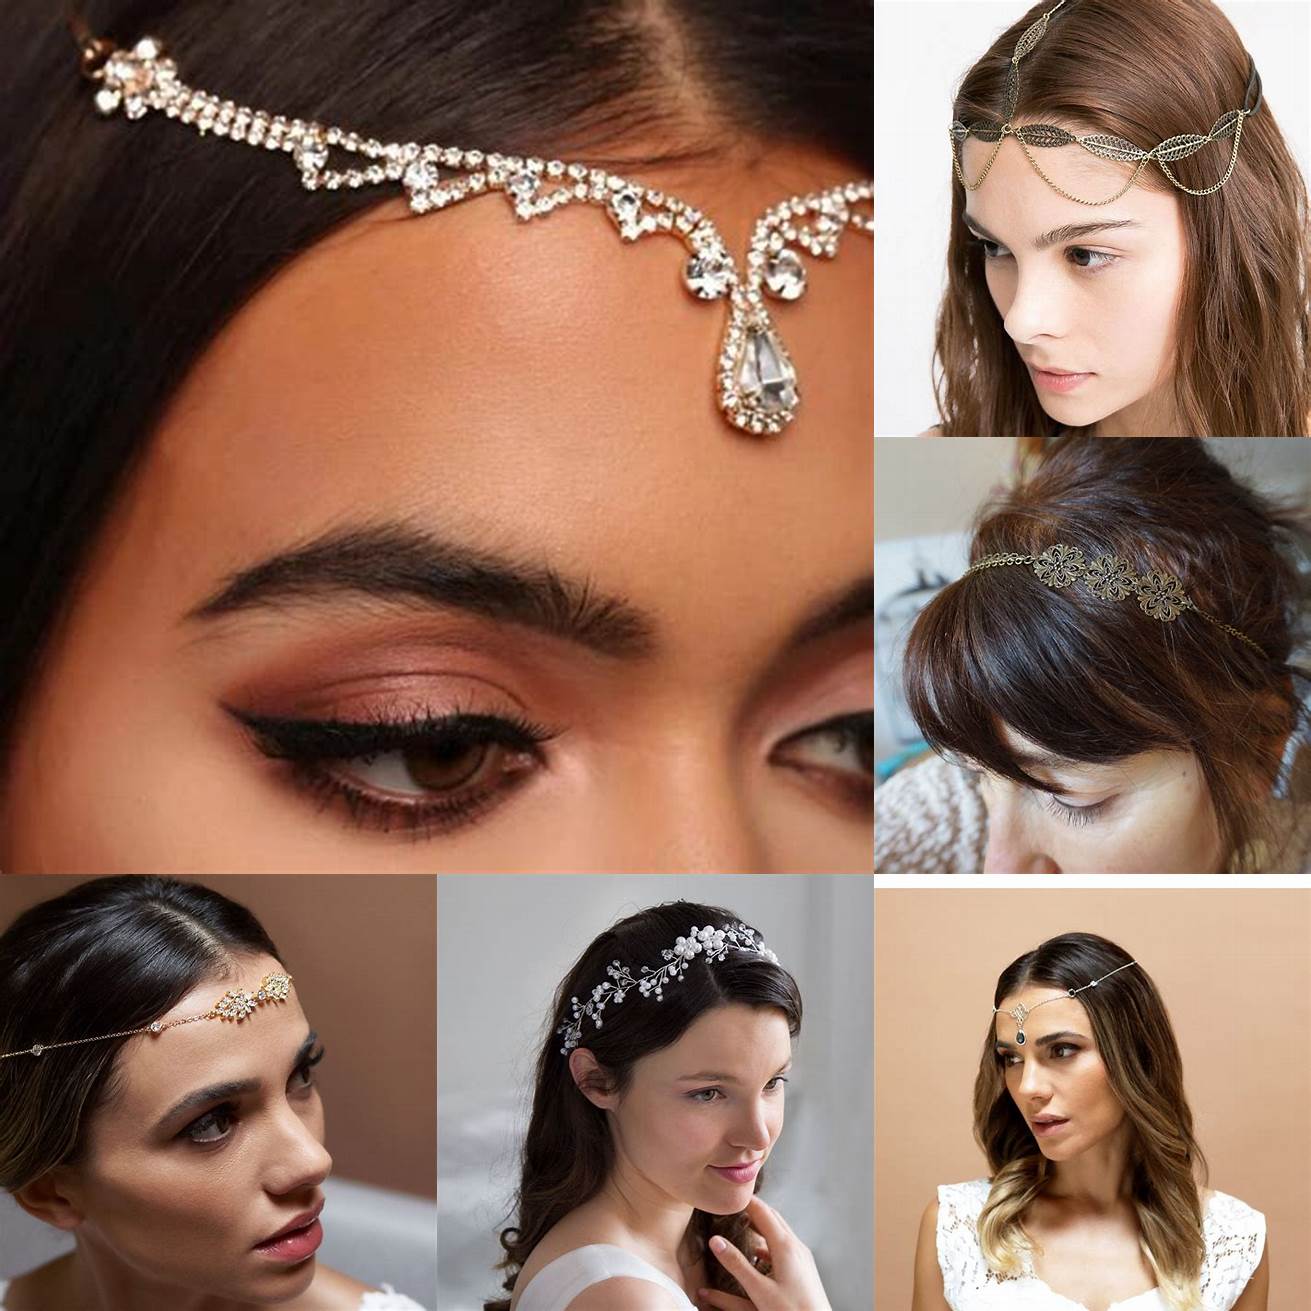 Bijoux de tête les bijoux de tête peuvent être réalisés en différents matériaux tels que lor largent les perles ou les cristaux Ils peuvent être portés sur des coiffures Nappy telles que les cornrows les tresses ou les Bantu knots